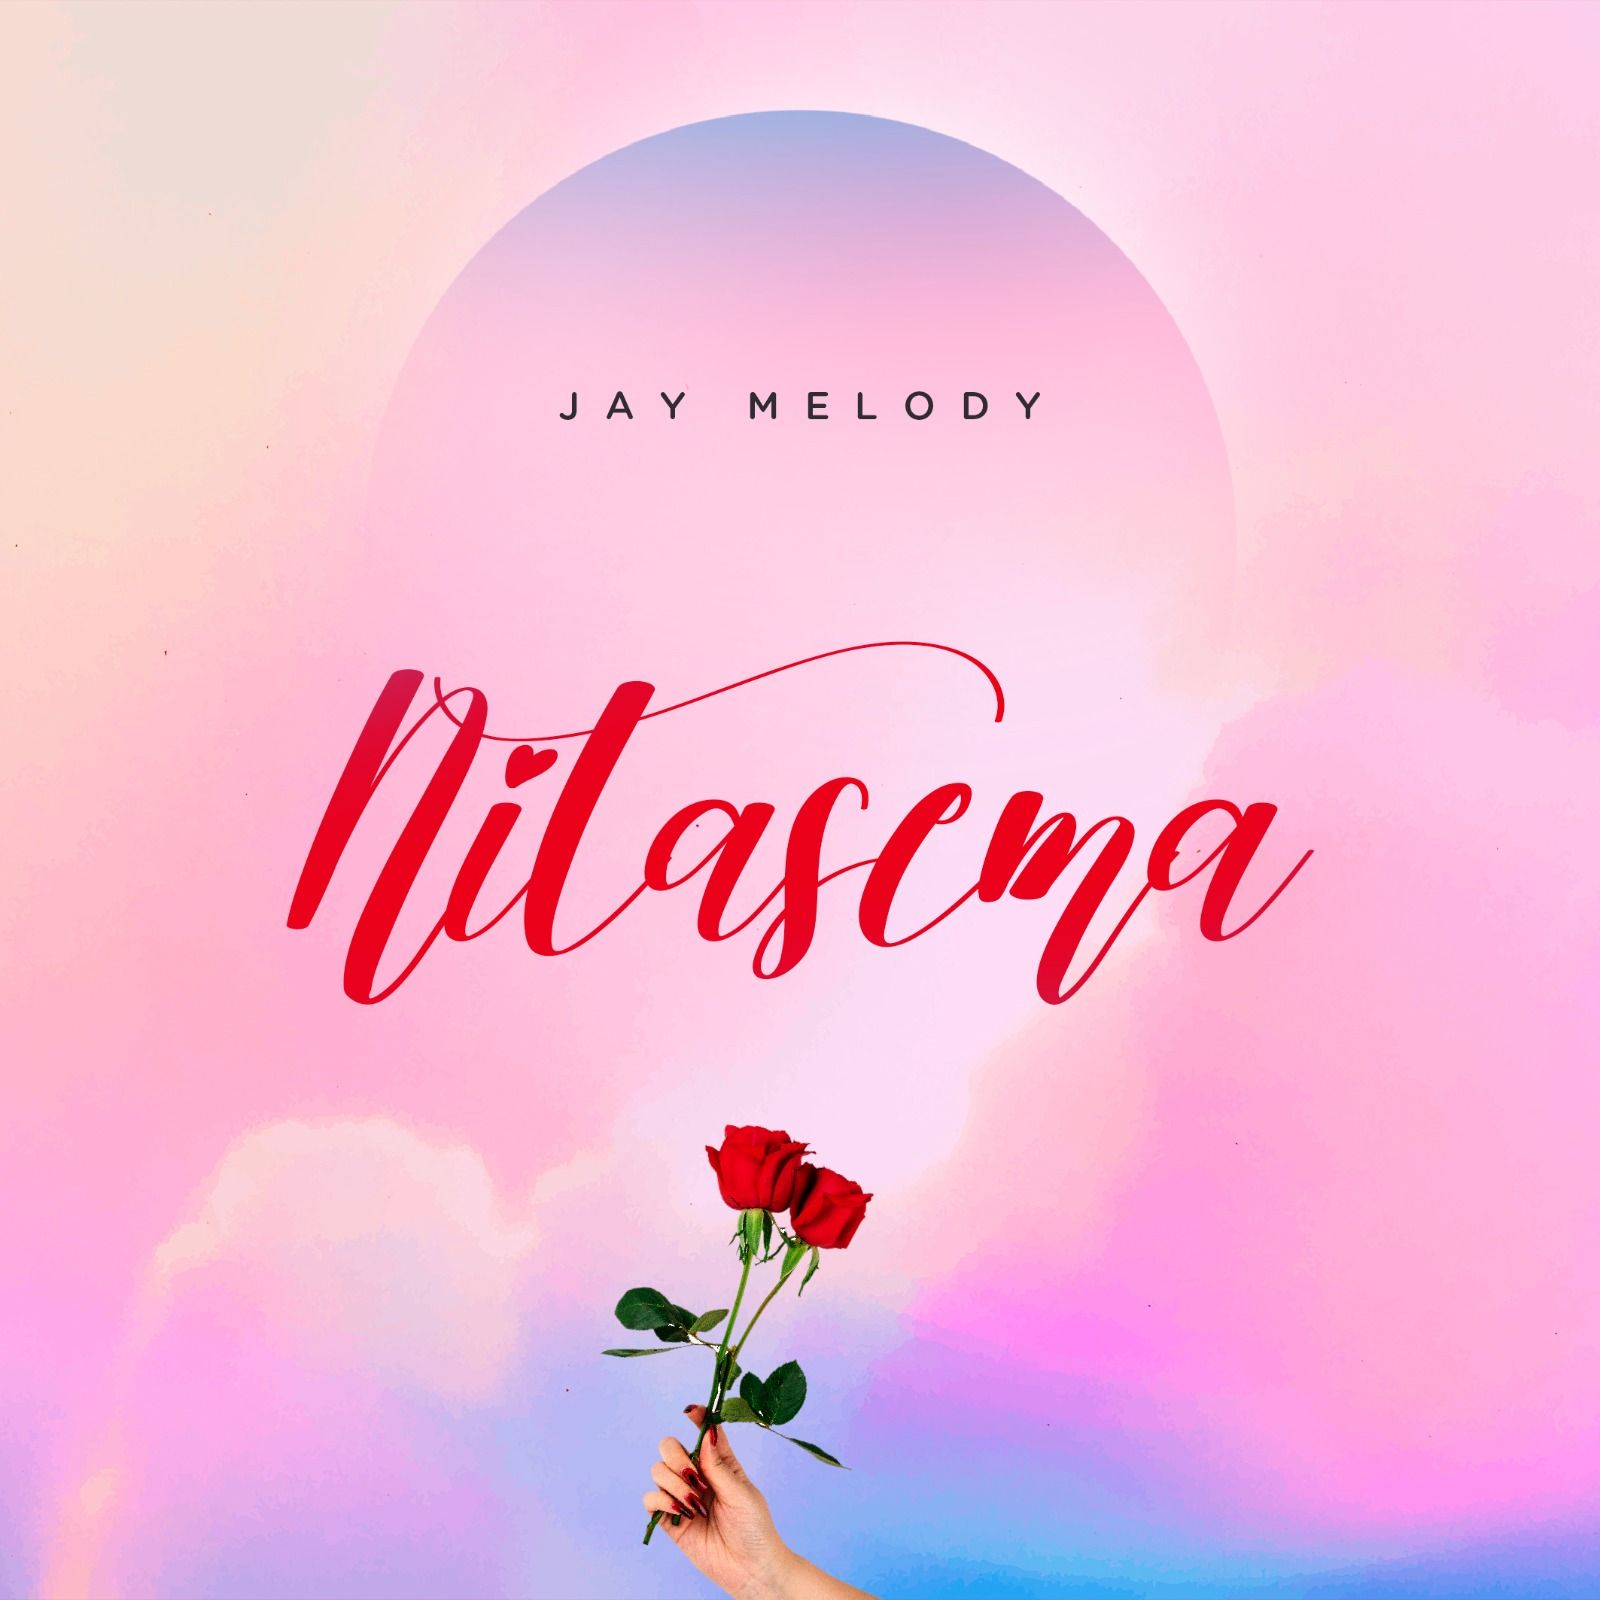 Jay melody - NItasema